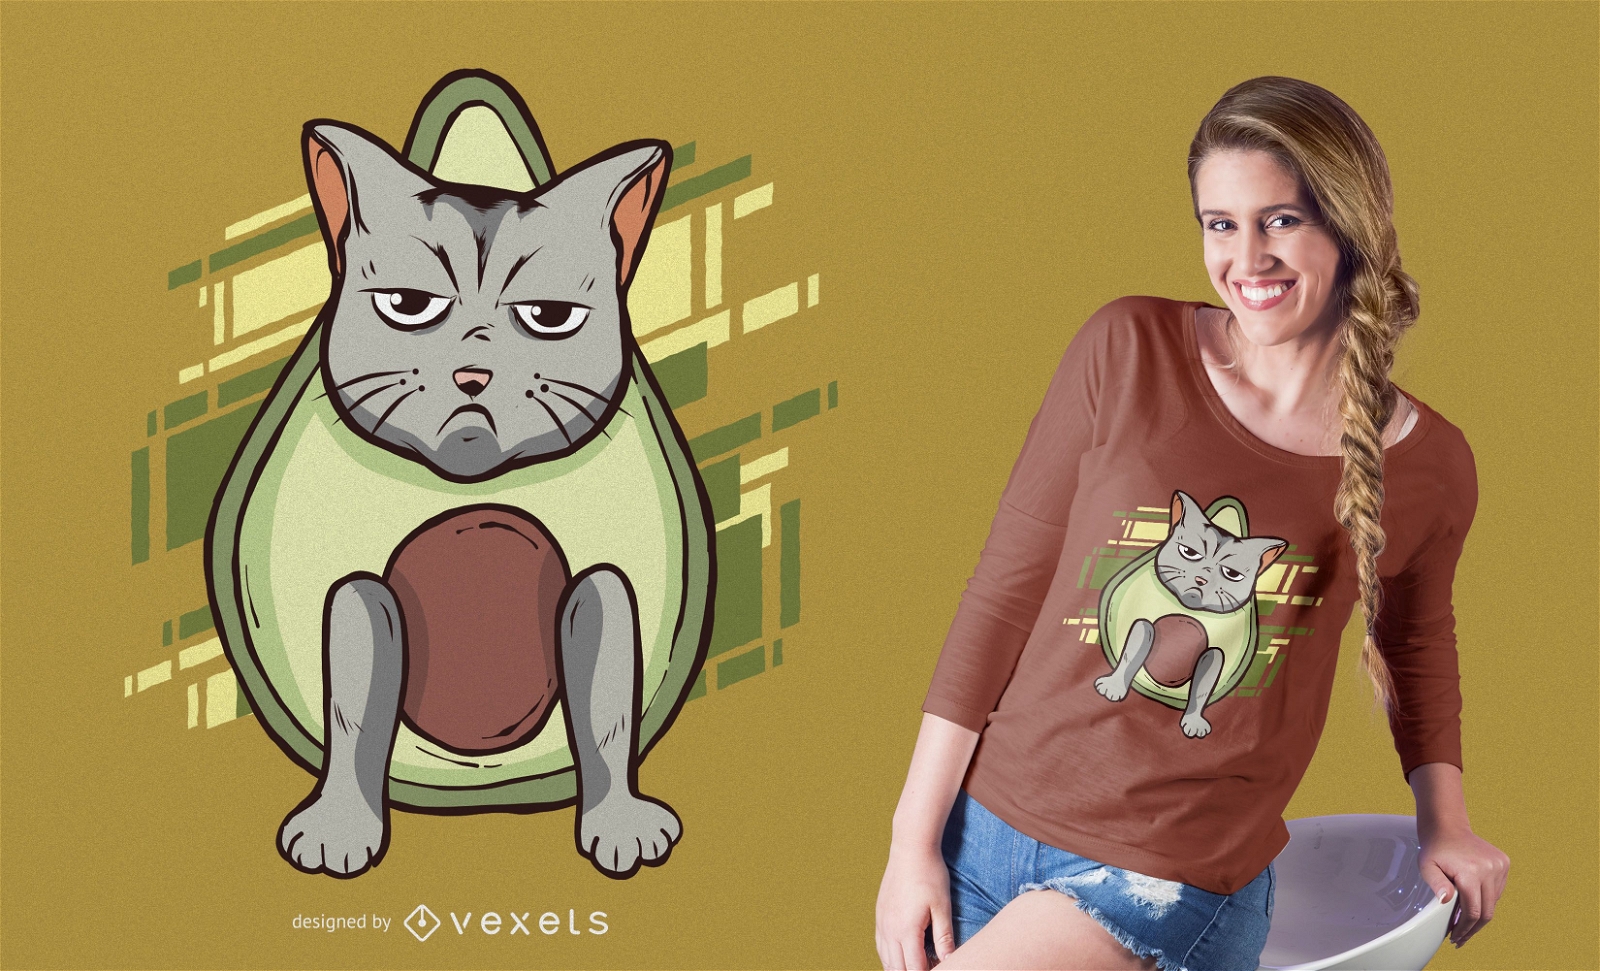 Angry avocado cat t-shirt design